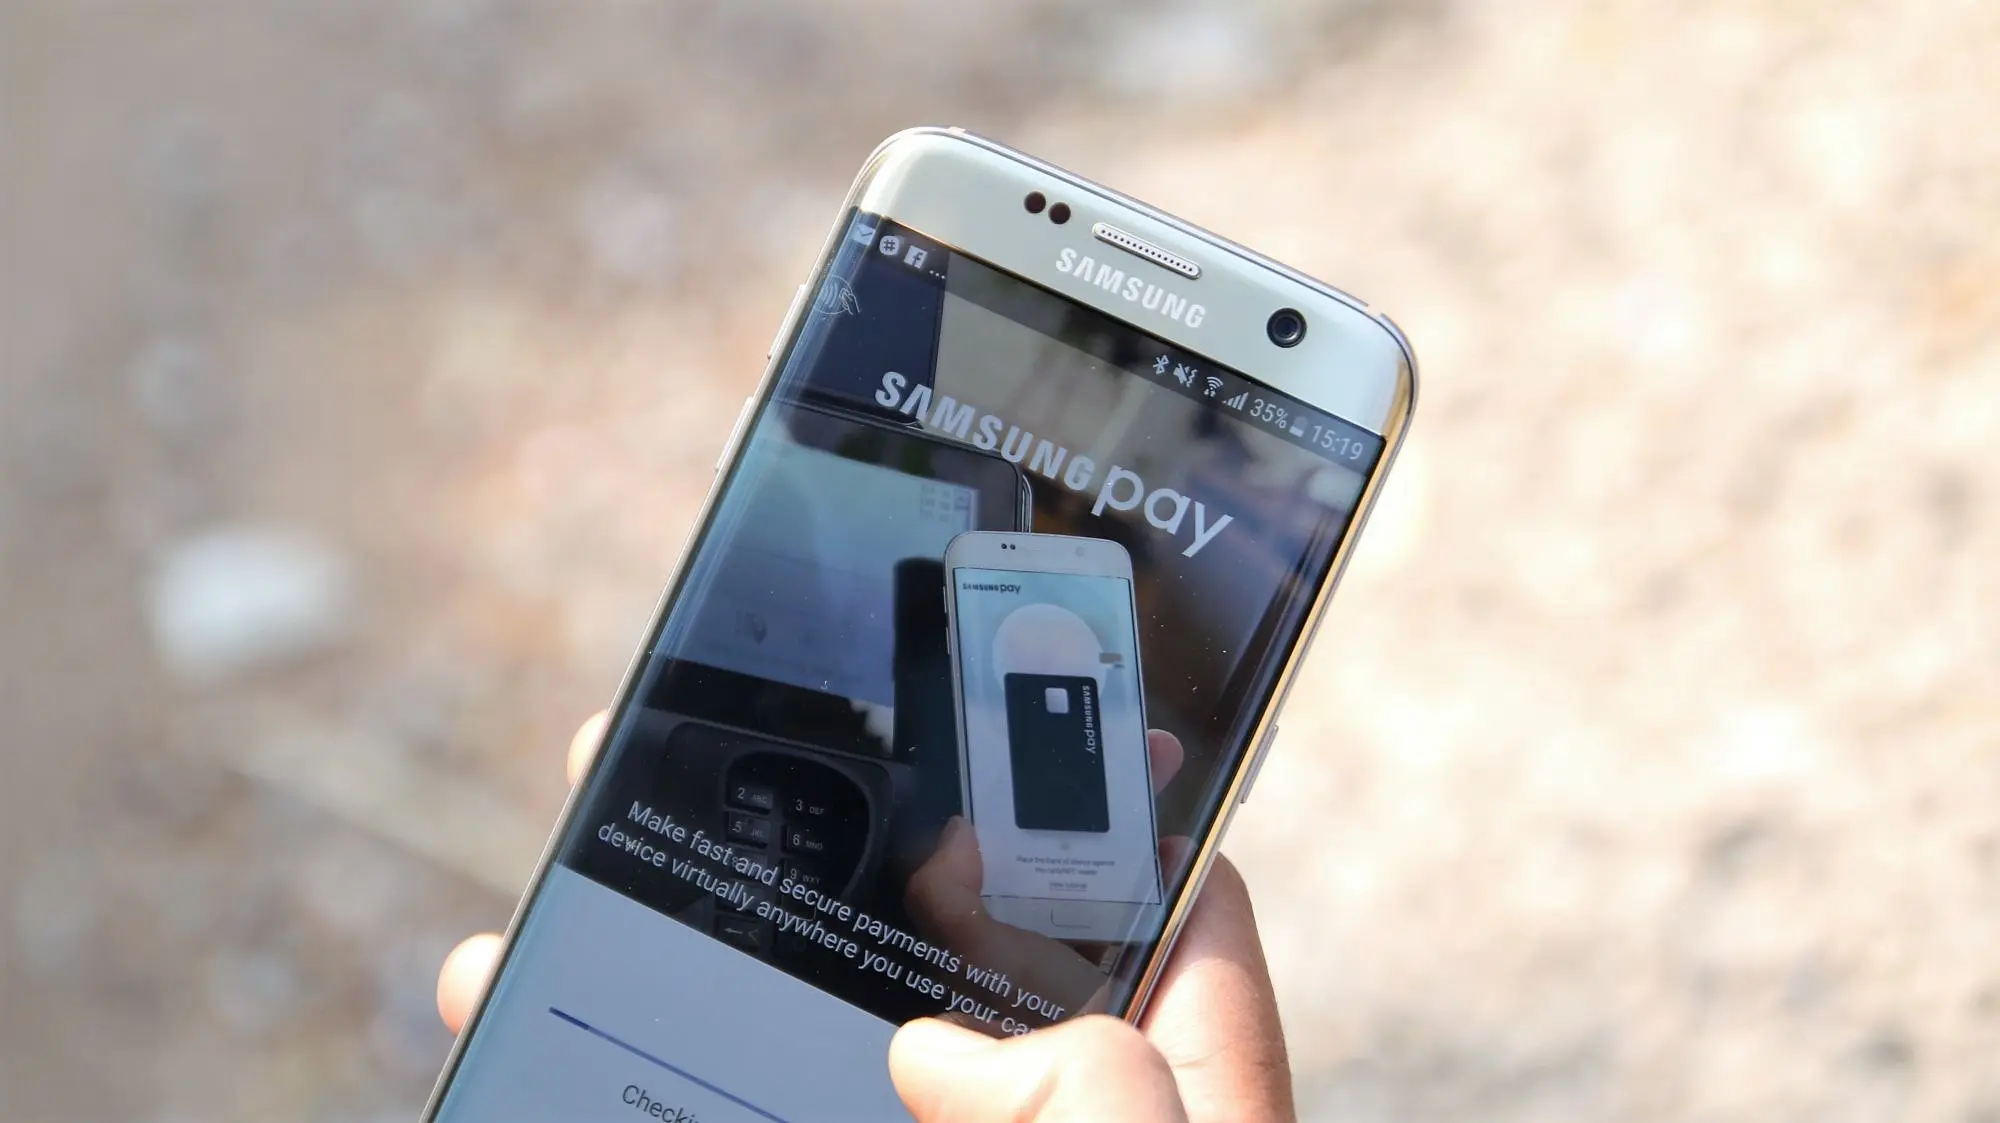 Samsung Pay mostrará nuestras tarjetas favoritas acercando nuestro móvil a una terminal